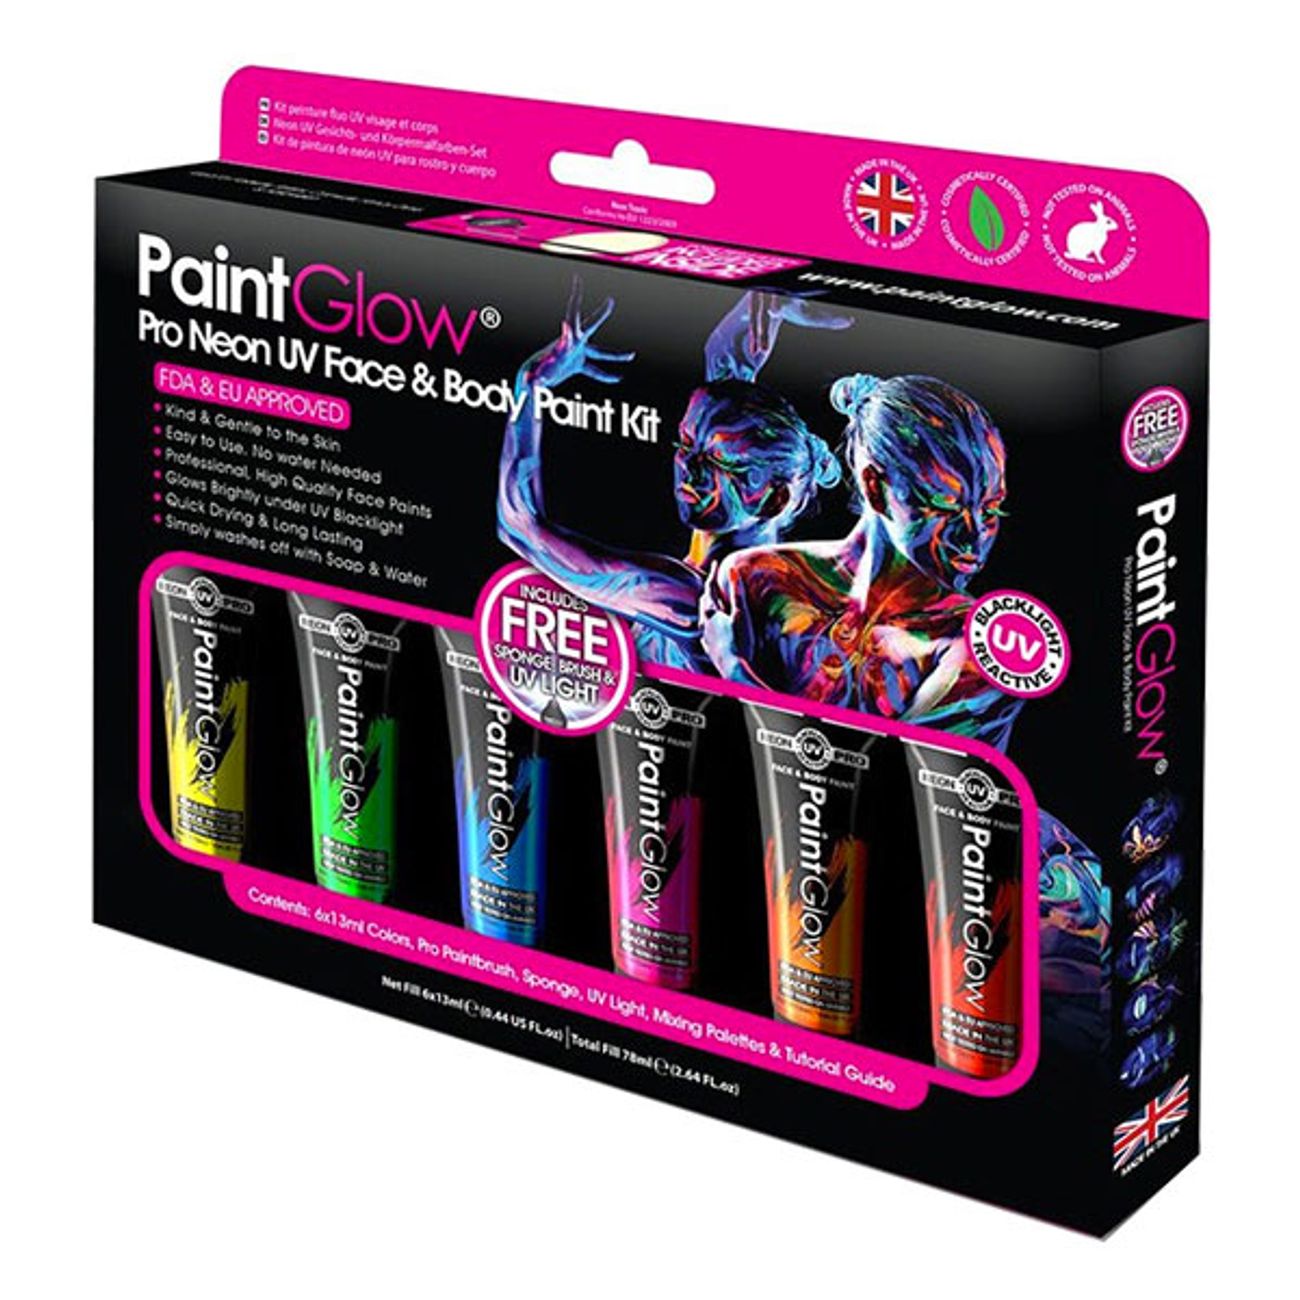 paintglow-pro-uv-neon-ansikts-kroppsfarg-kit-1